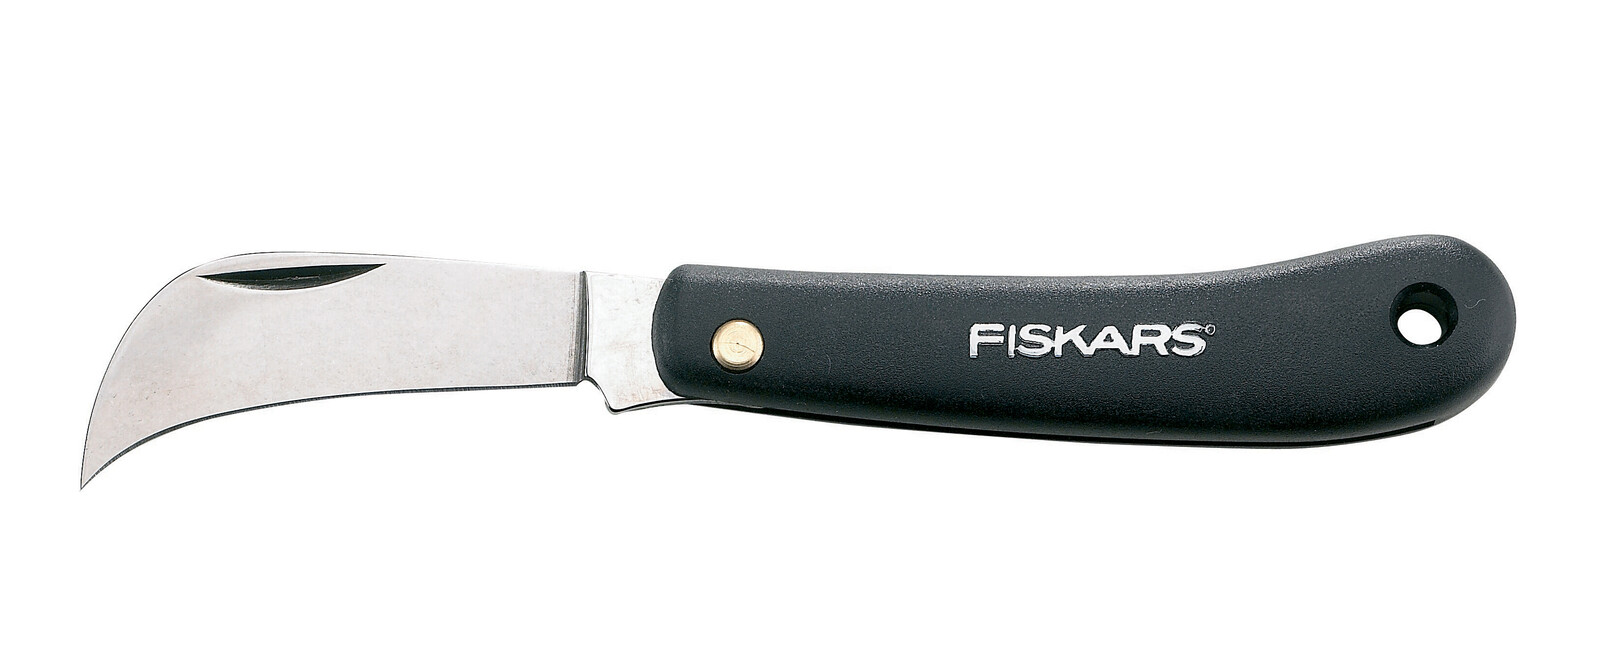 Отзывы нож складной Fiskars 1001623